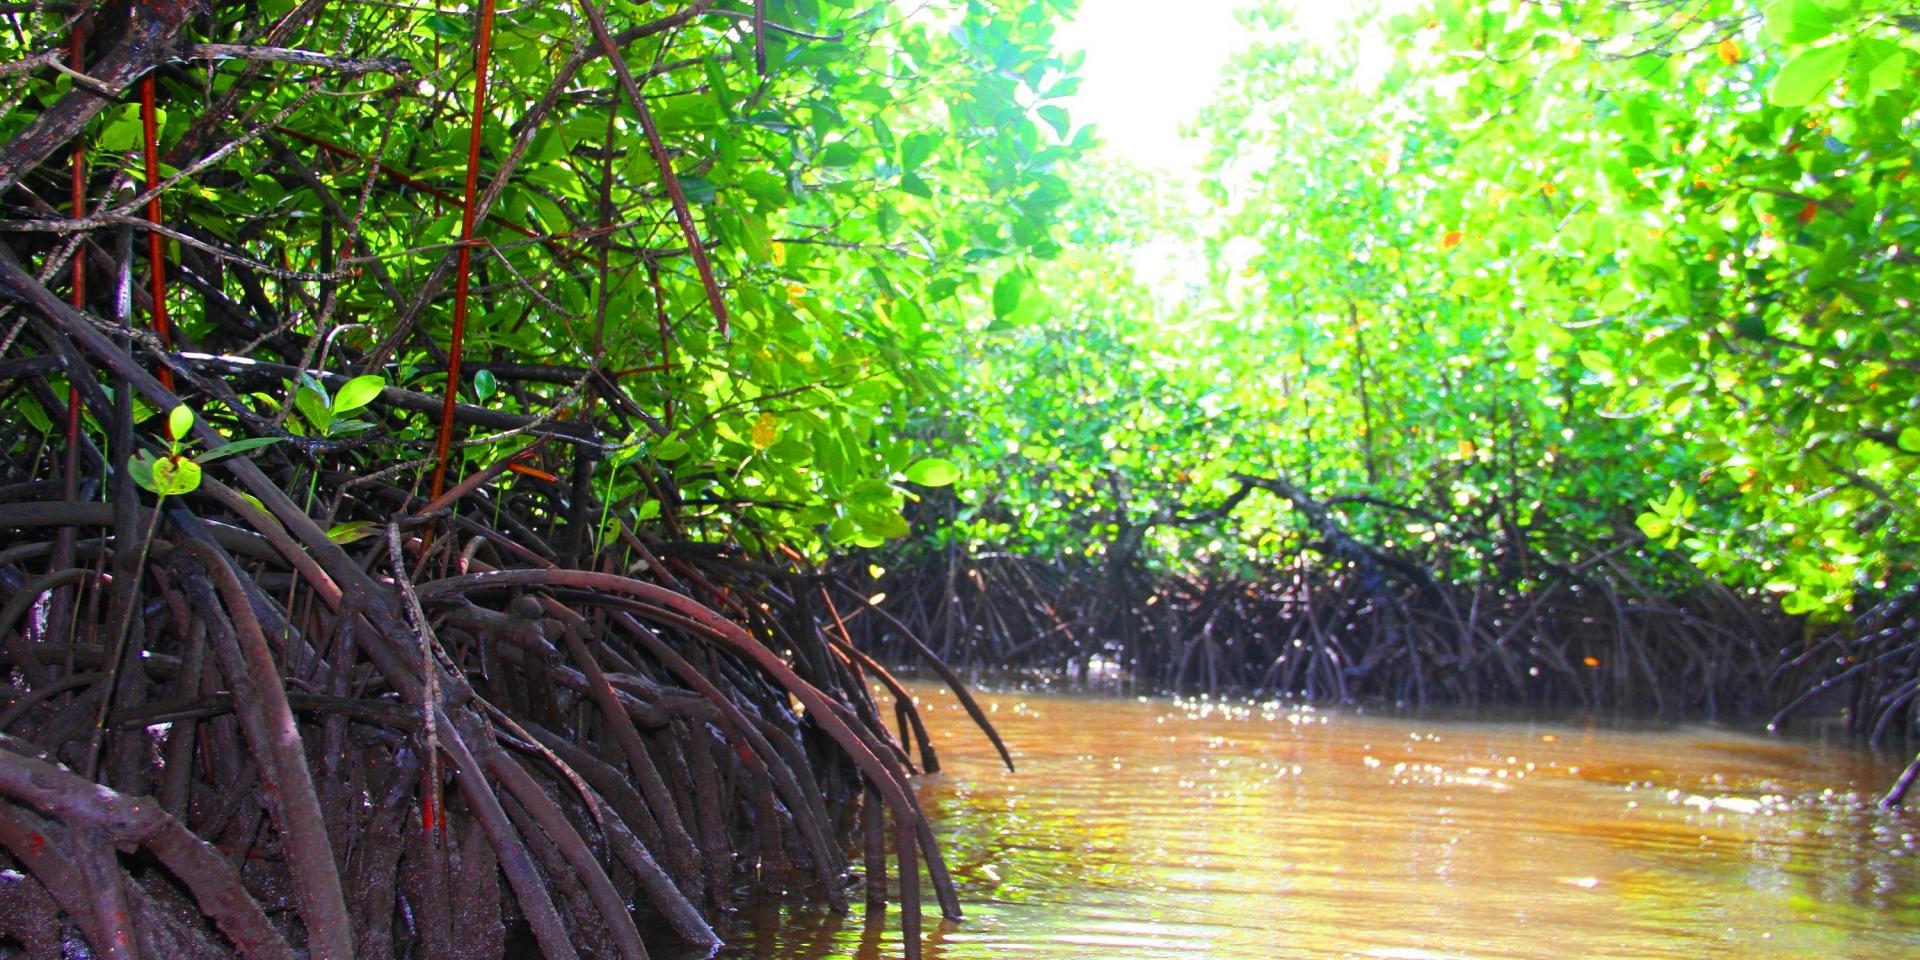 Sainte marie mangrove